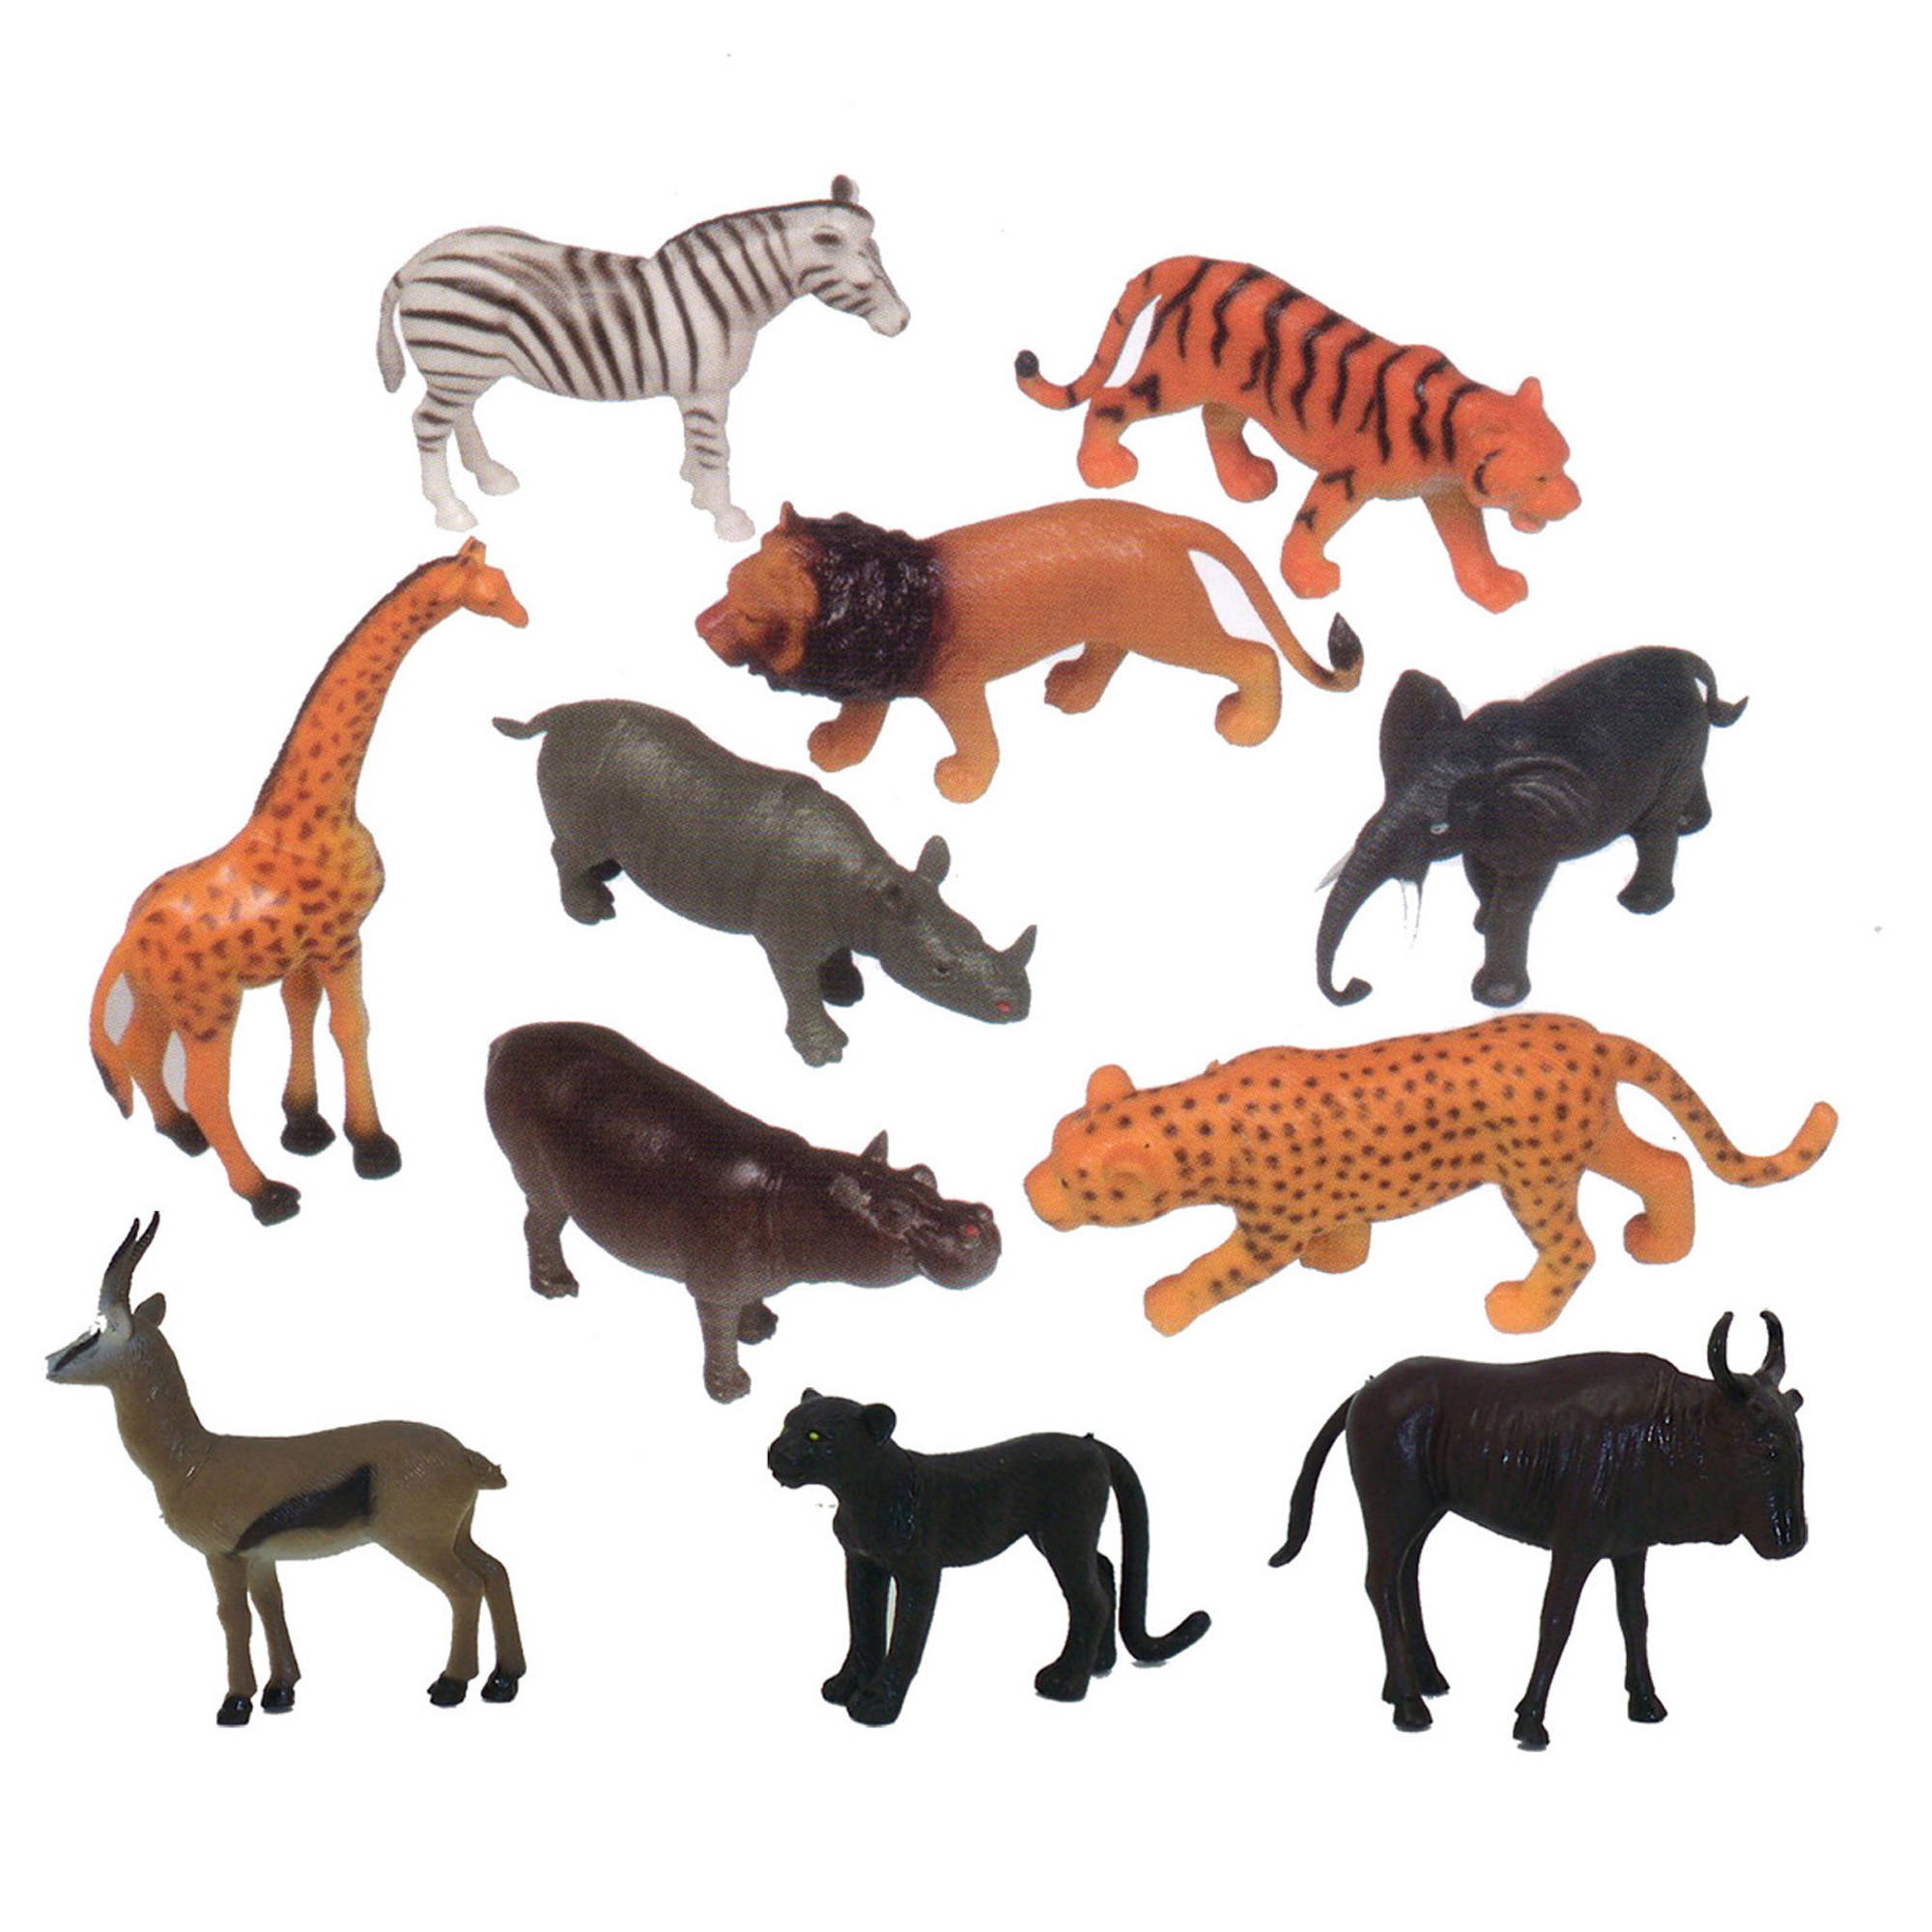 Kids box wild animals. Игрушки животные. Фигурки животных для детей. Набор фигурок животных. Пластмассовые игрушки животные.